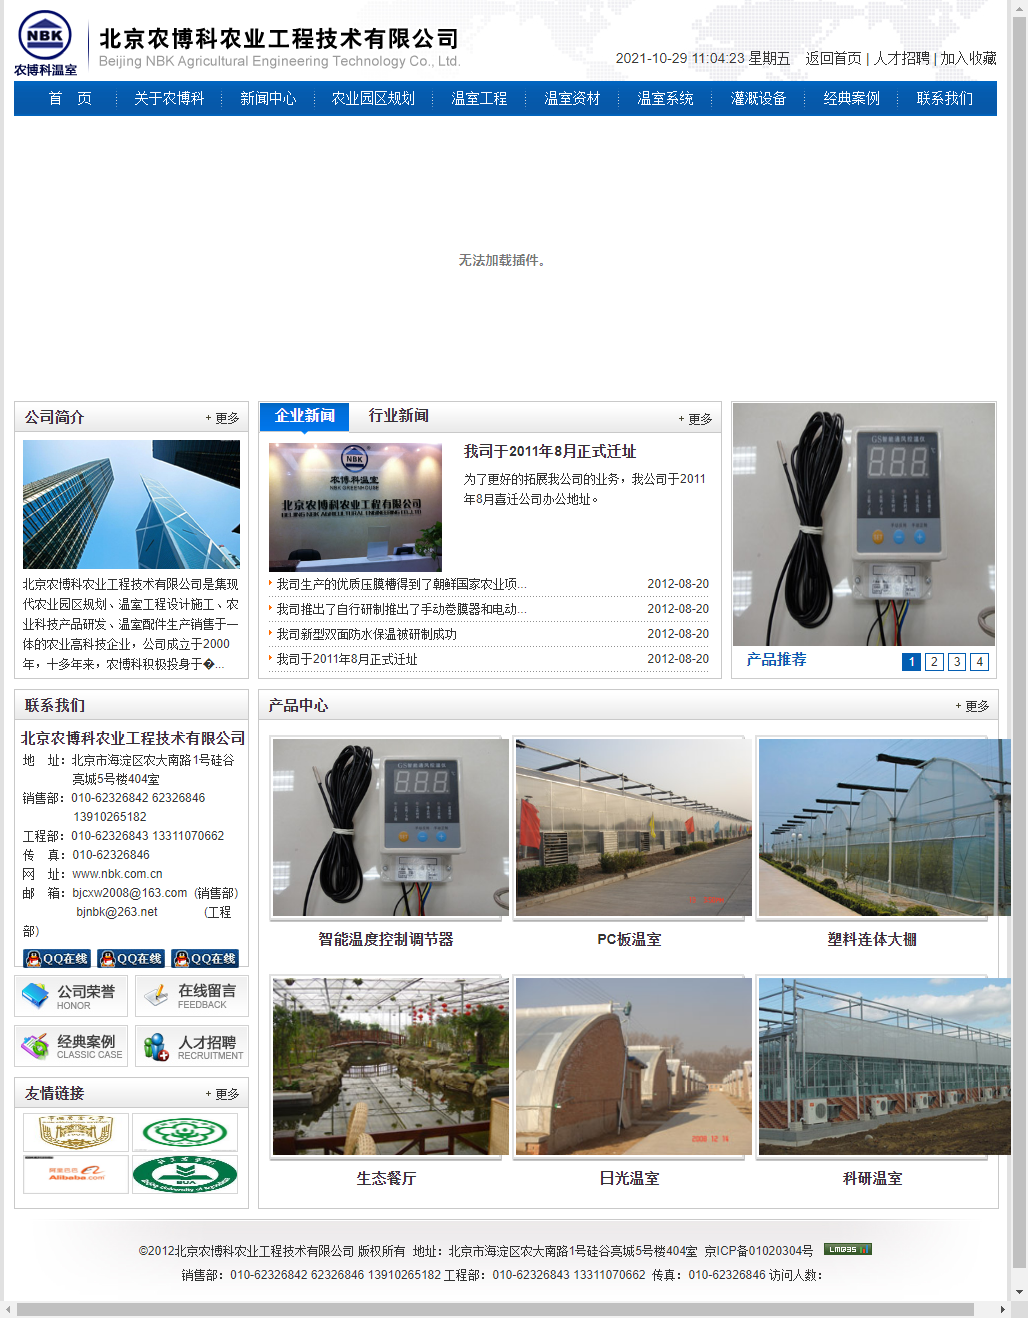 北京农博科农业工程技术有限公司网站案例